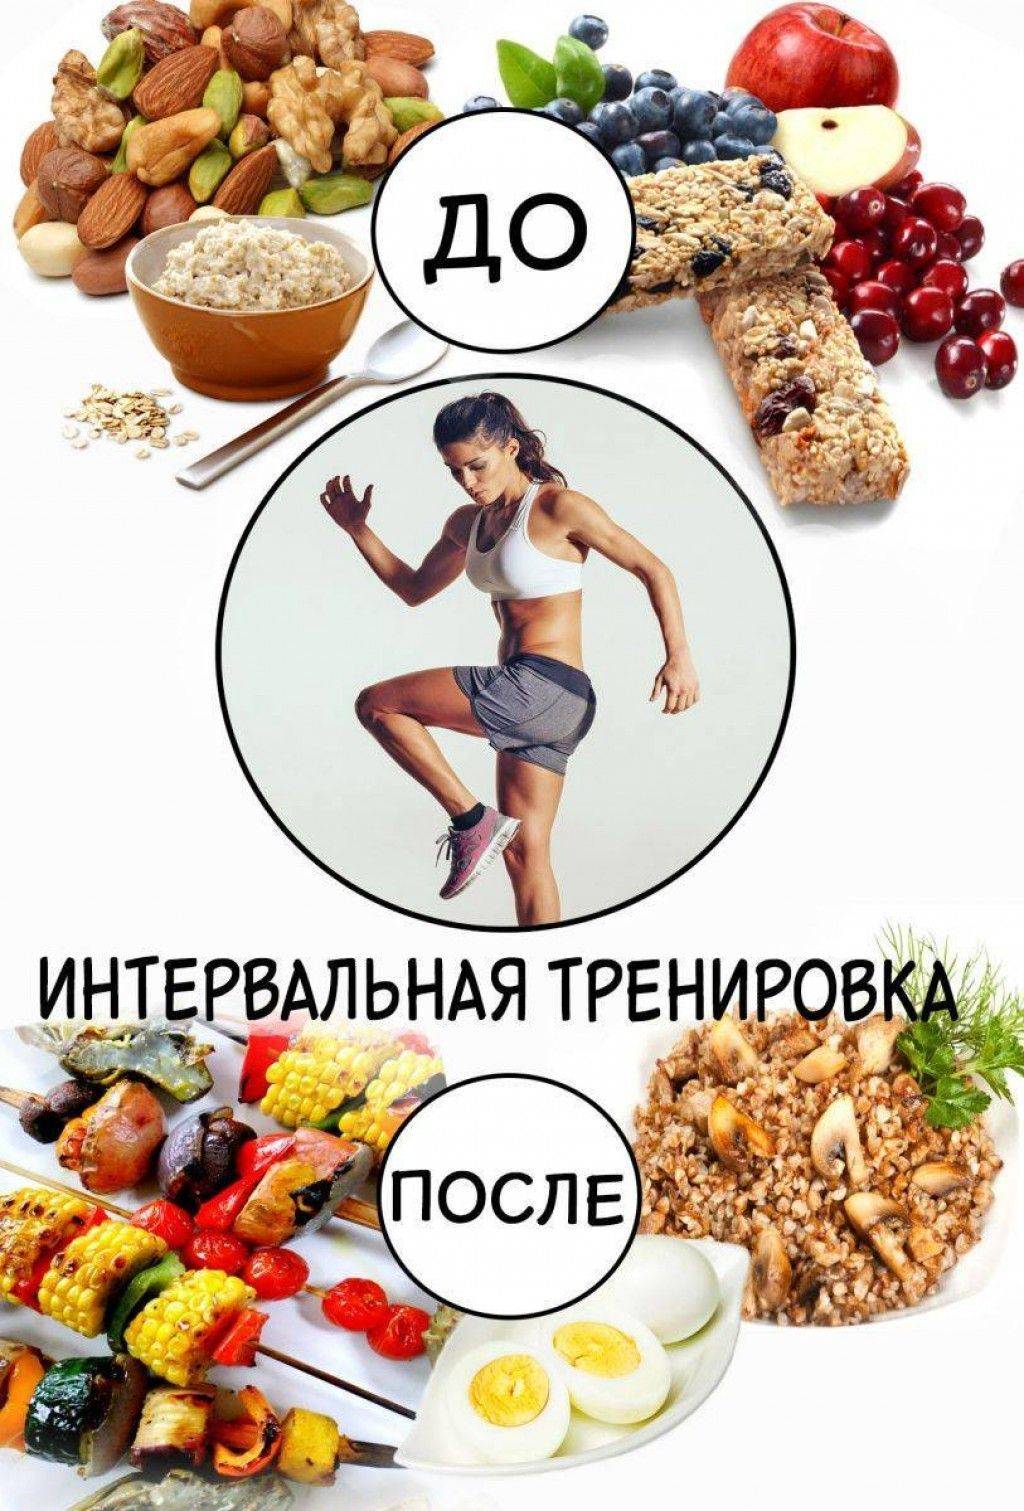 Что нужно съесть после. Что съесть перед трнировко. Еда до и после тренировки. Питание после тренировки. Питание до и после тренировки.